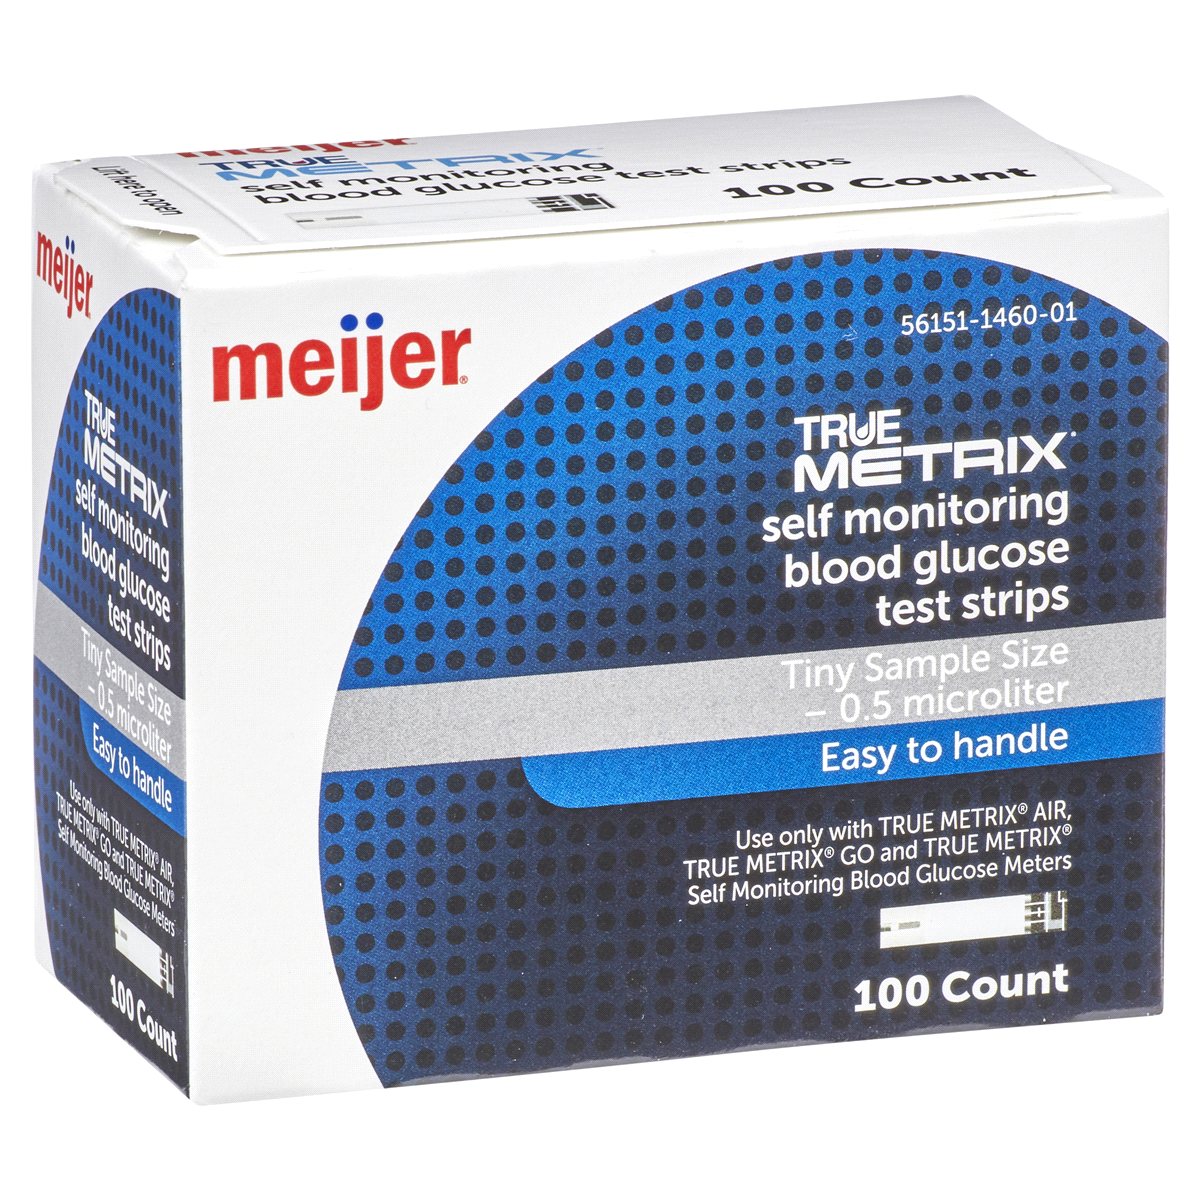 slide 5 of 29, Meijer True Metrix Self Monitoring Blood Glucose Test Strips, 100 ct